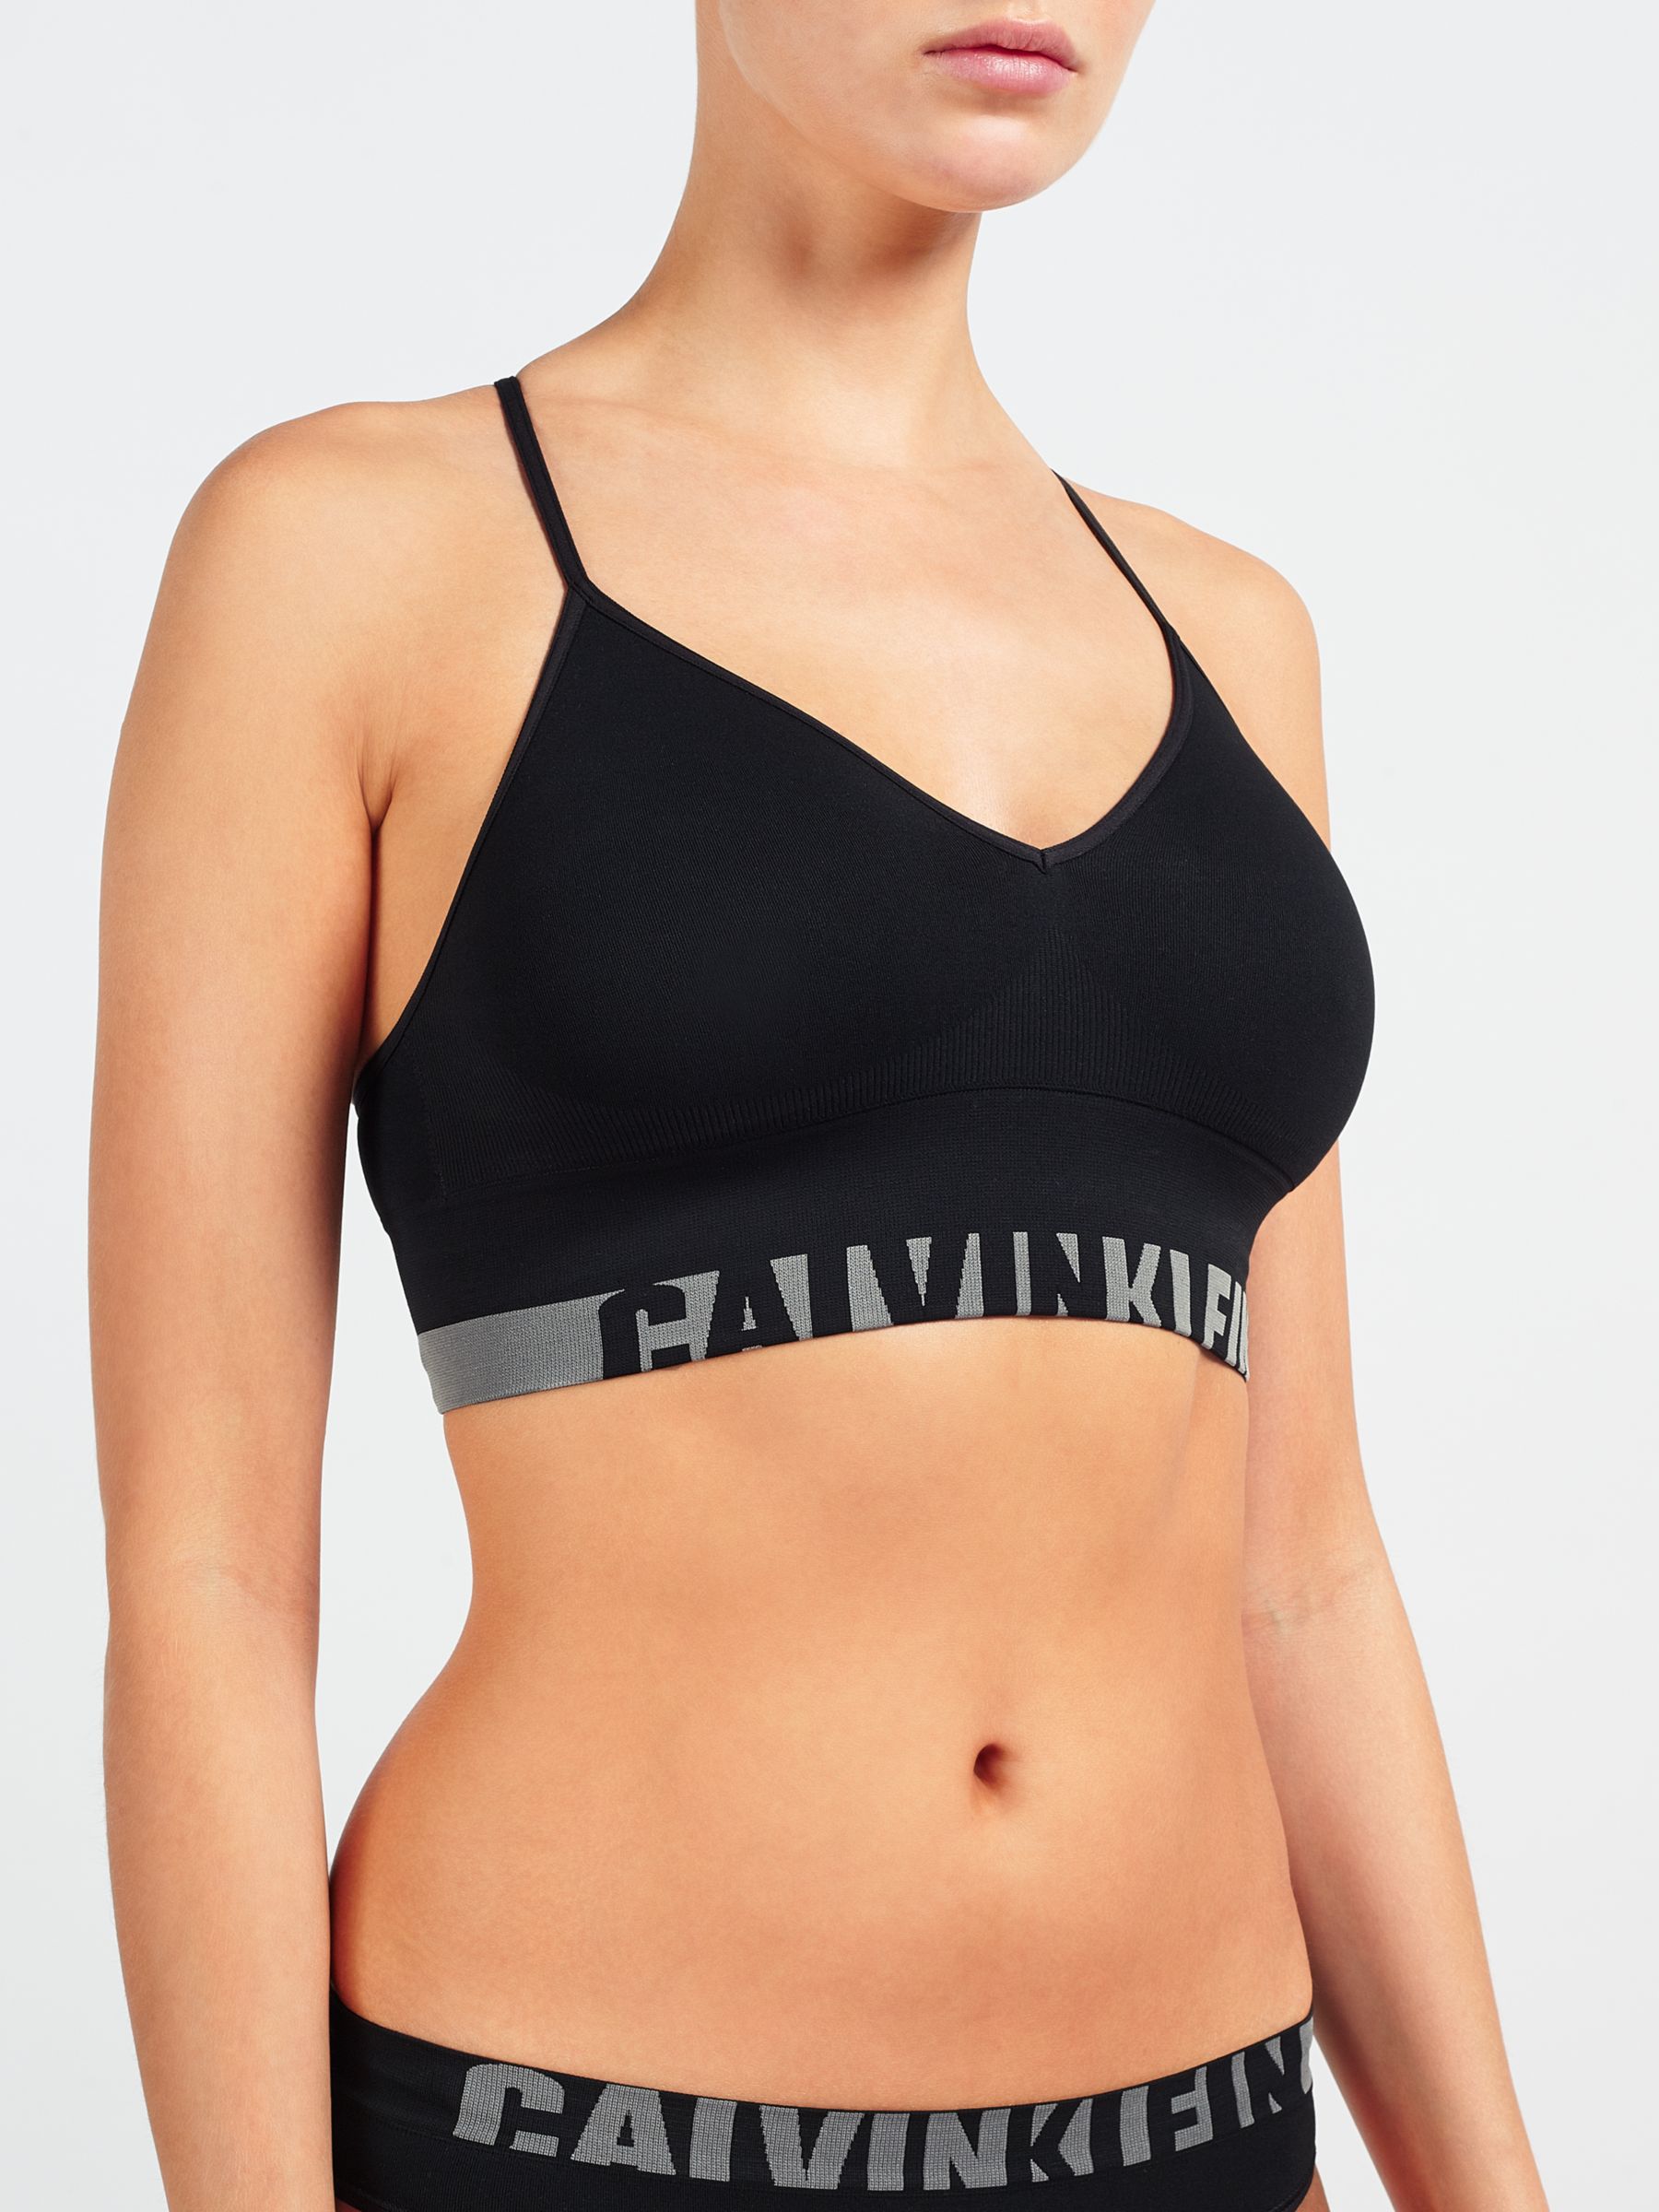 Calvin Klein Underwear Bras, Women's Bralets & Bra Tops